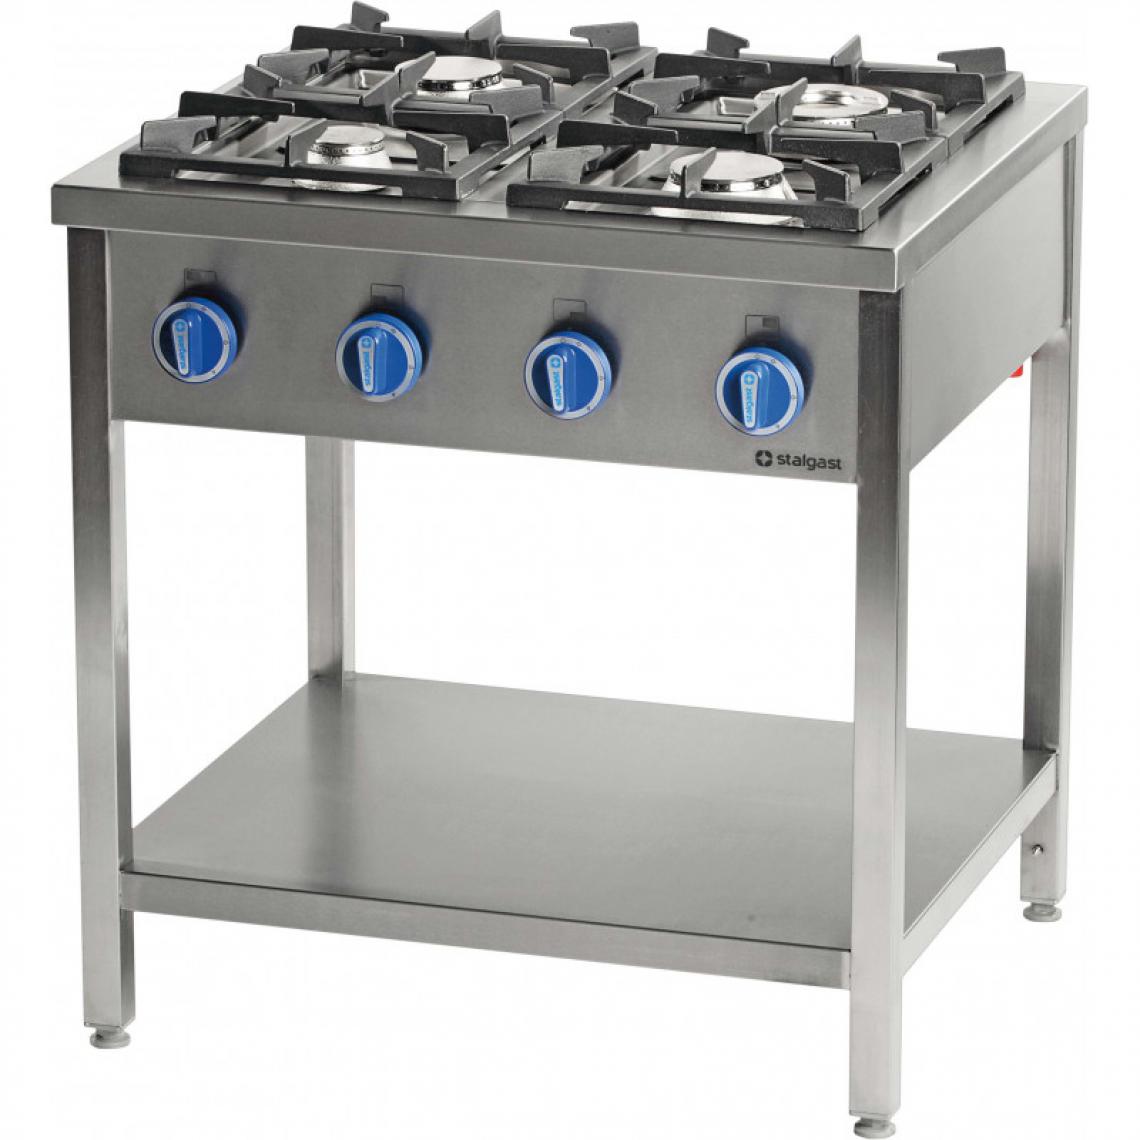 Materiel Chr Pro - Cuisinière à Gaz sur Table Inox Série 900 - 6 Brûleurs - Stalgast - 32,5 kW Gaz de ville - Cuisinière